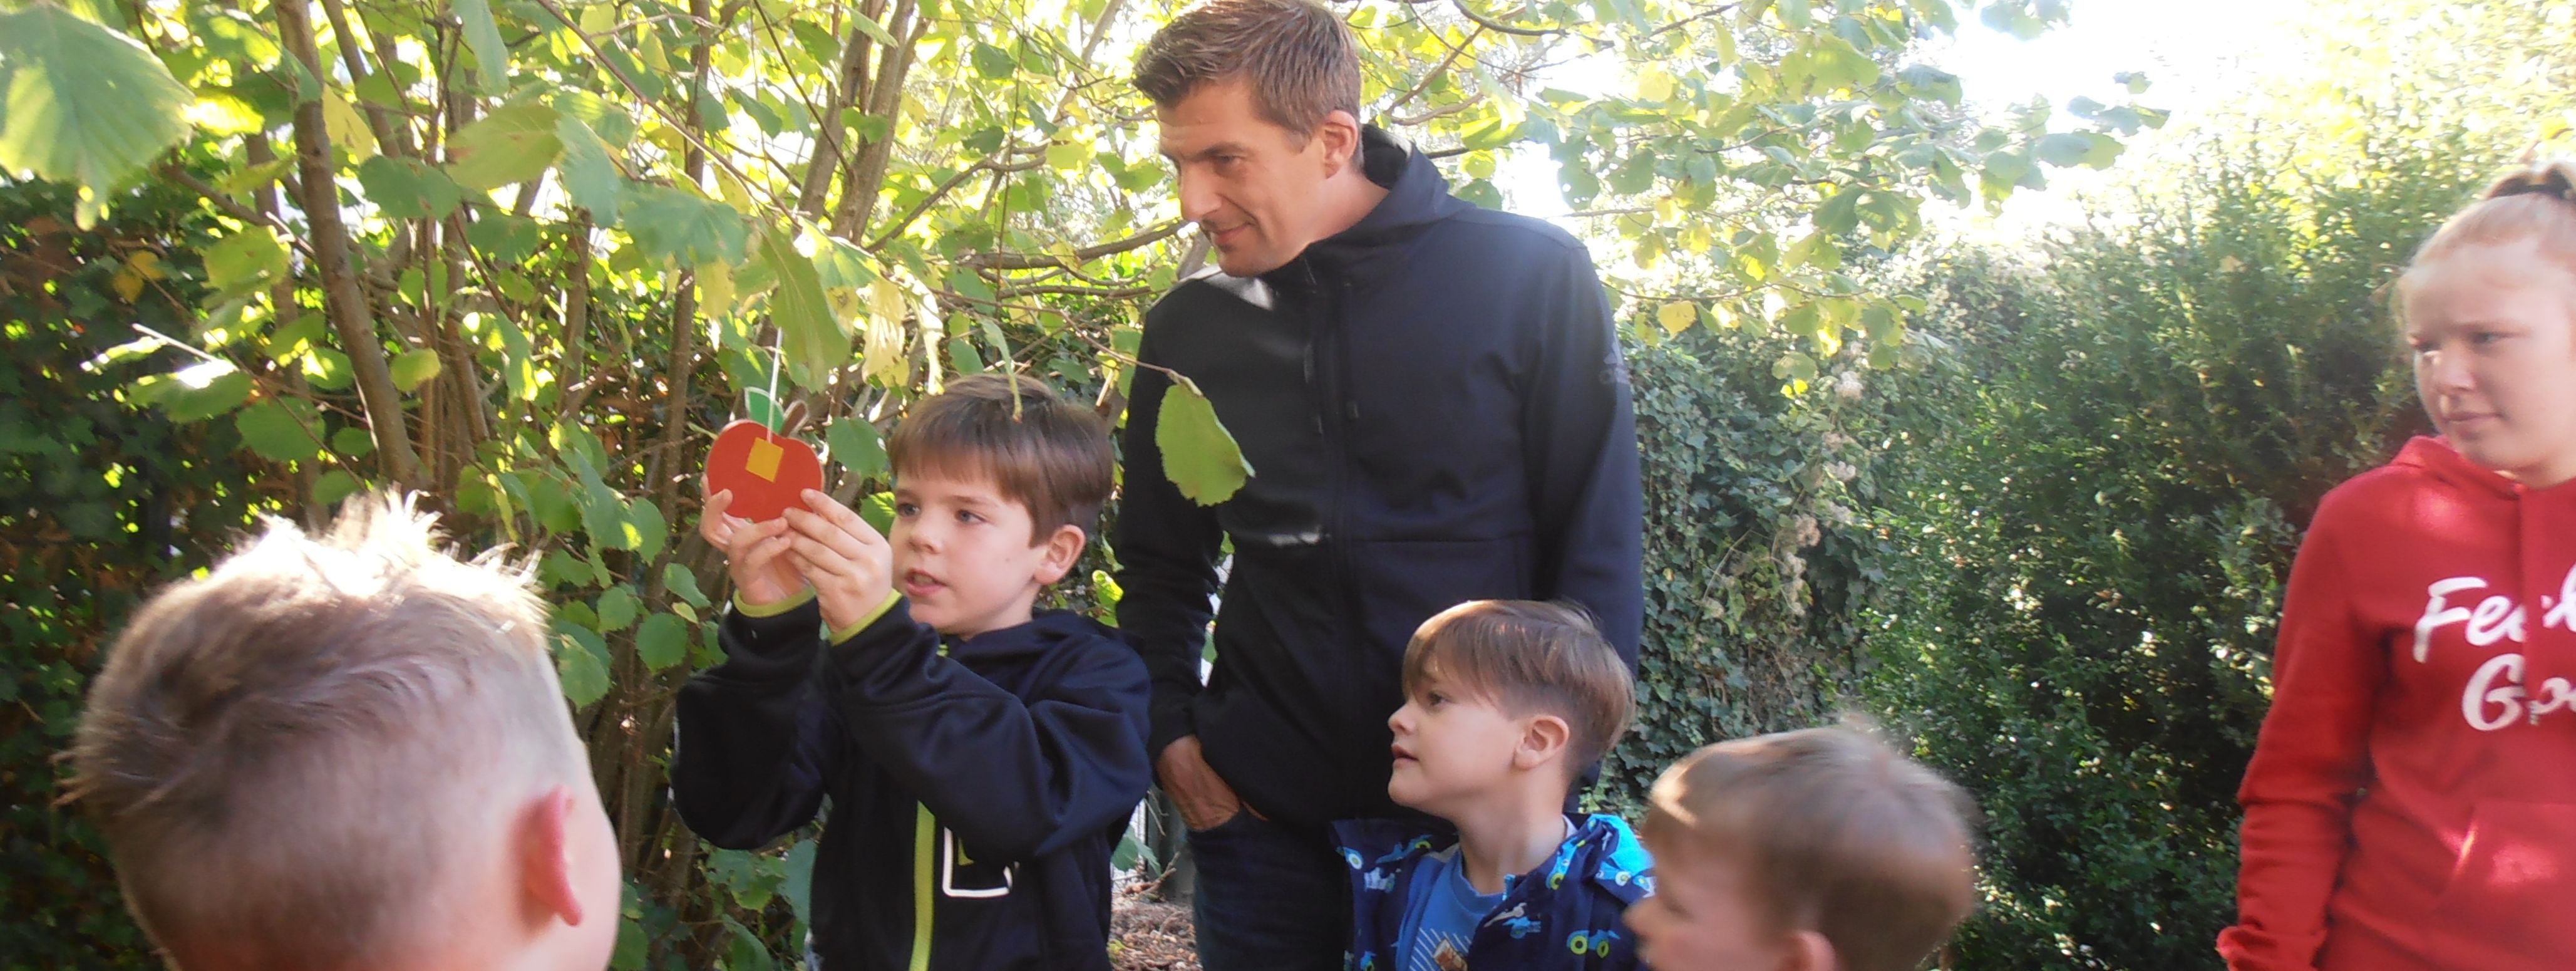 Vier Kinder und zwei Erwachsene stehen an einem Apfelbaum. Eines der Kinder hängt einen selbstgebastelten Apfel aus Pappe an einen Ast.